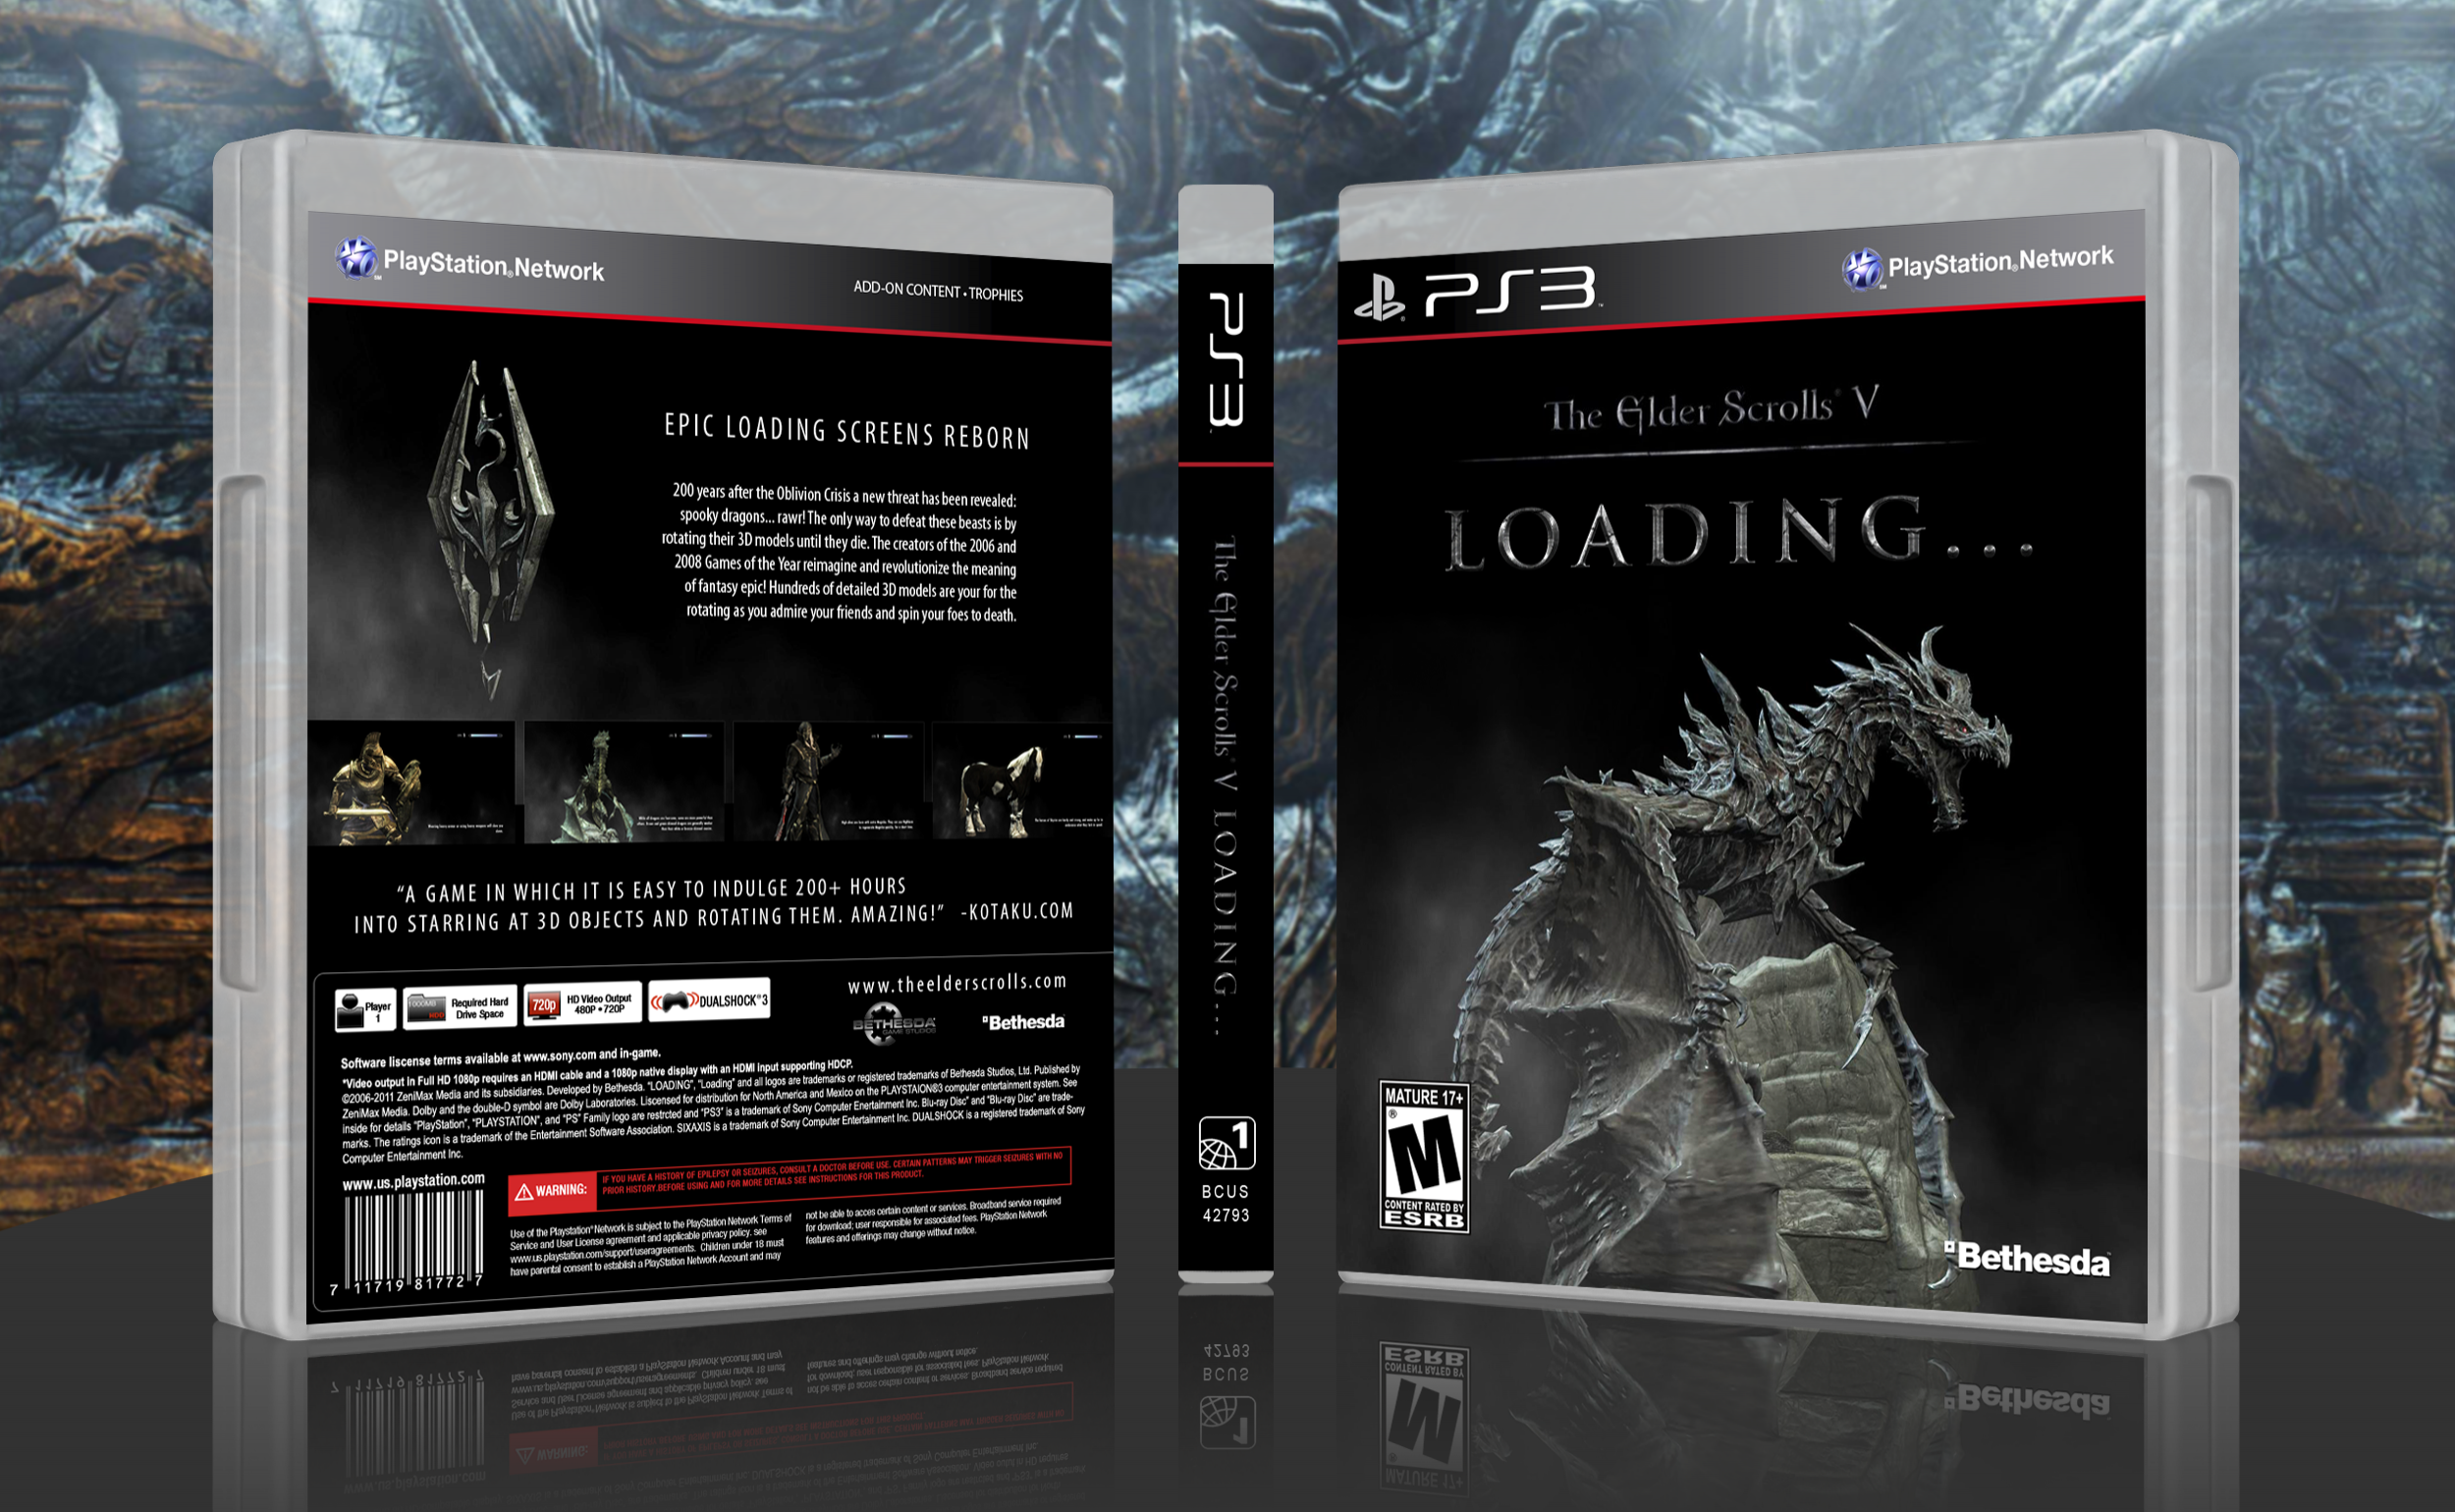 The Elder Scrolls V: Loading... box cover